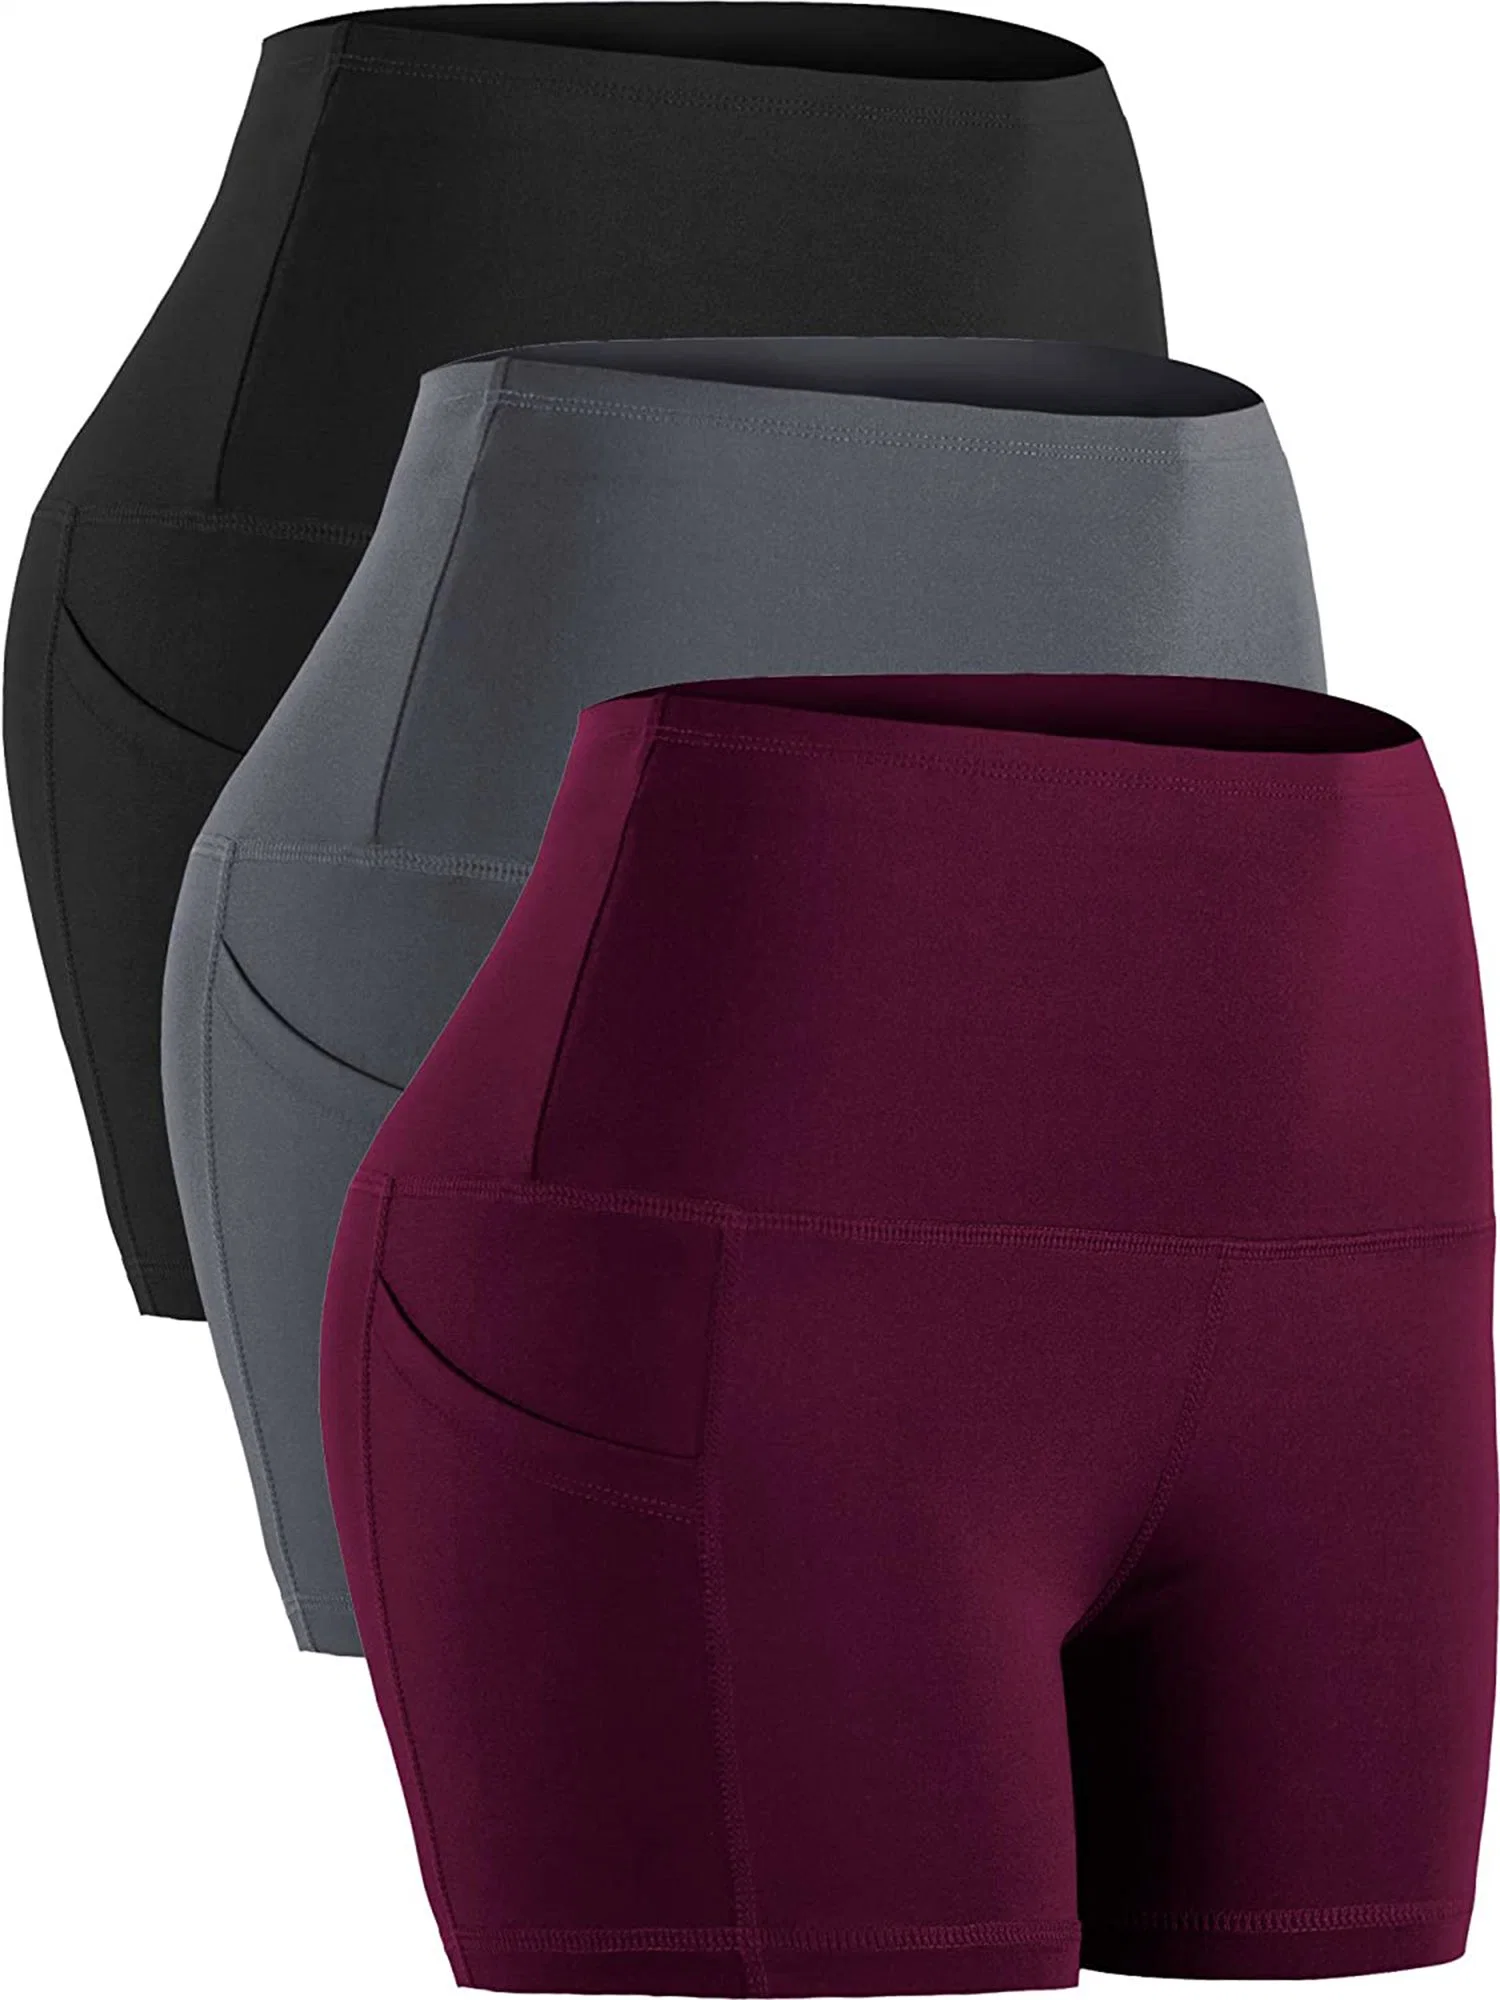 Ciclista Mmanufacture prendas de vestir pantalones cortos para mujer - Alto Con cintura vientre suave Control pantalones cortos para el yoga, correr, entrenar, el Athletic